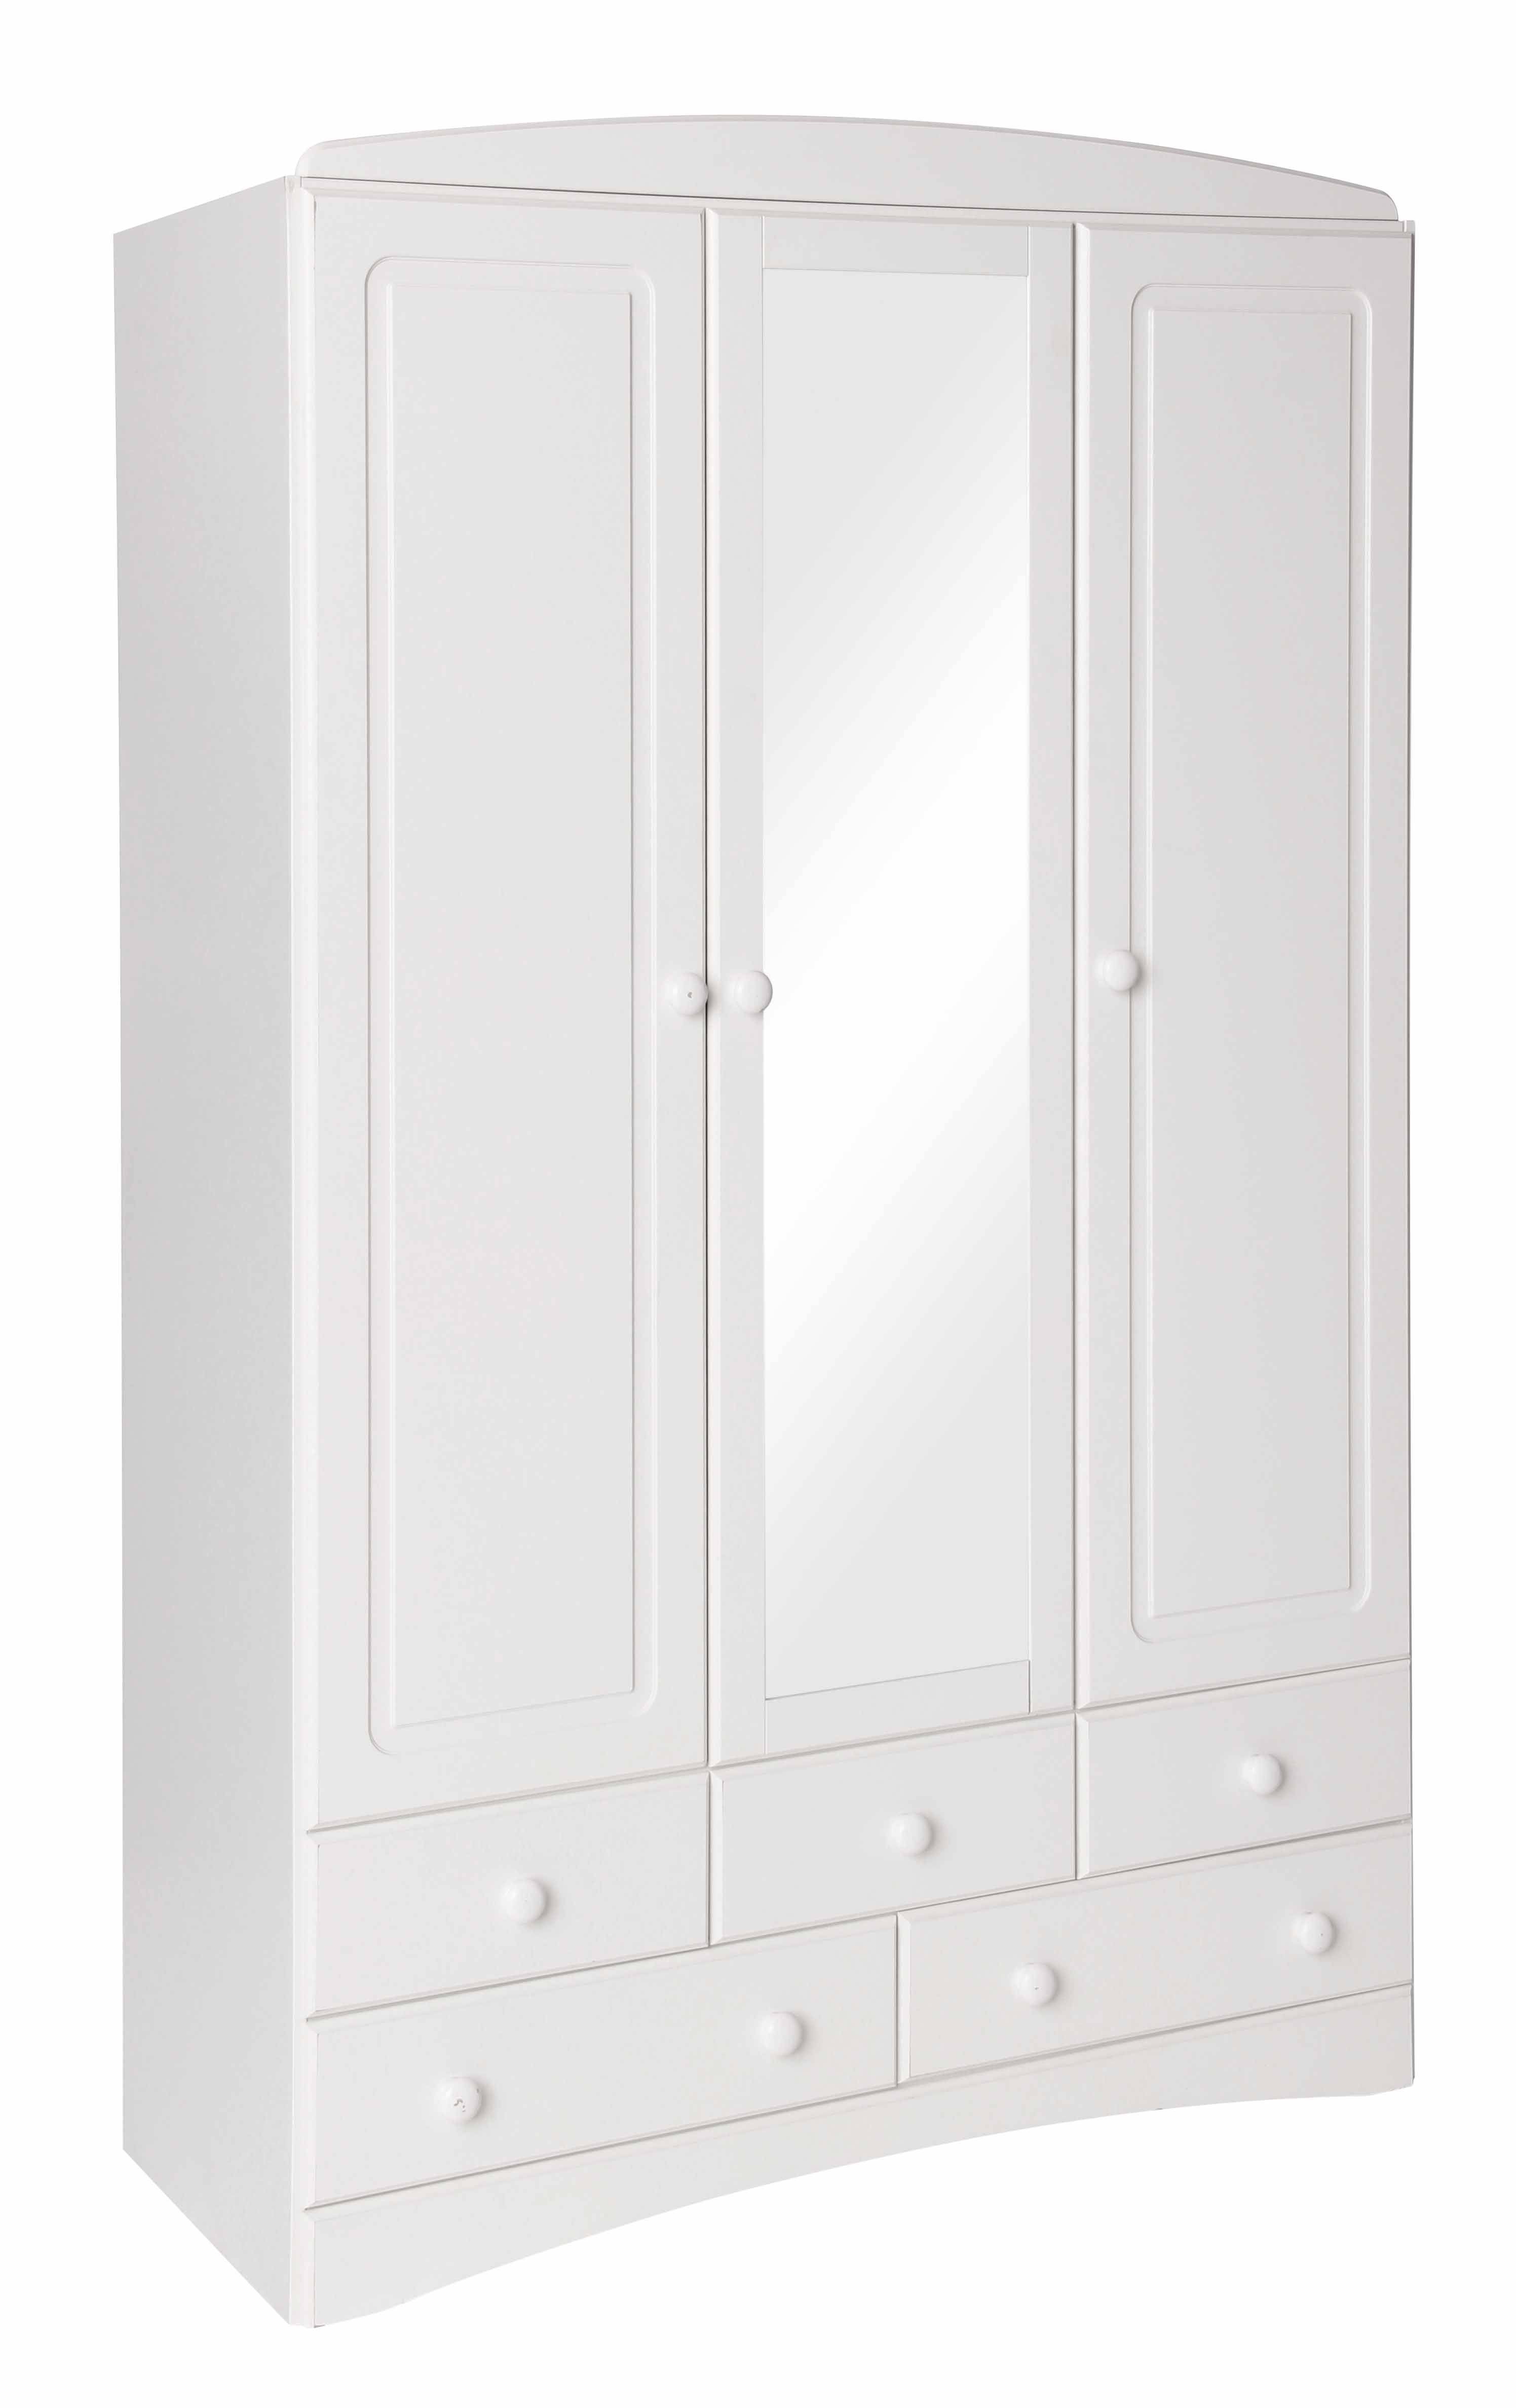 Scandi White 3 Door 5 Drawer Wardrobe With Mirror Intended For White 3 Door Mirrored Wardrobes (Photo 3 of 15)